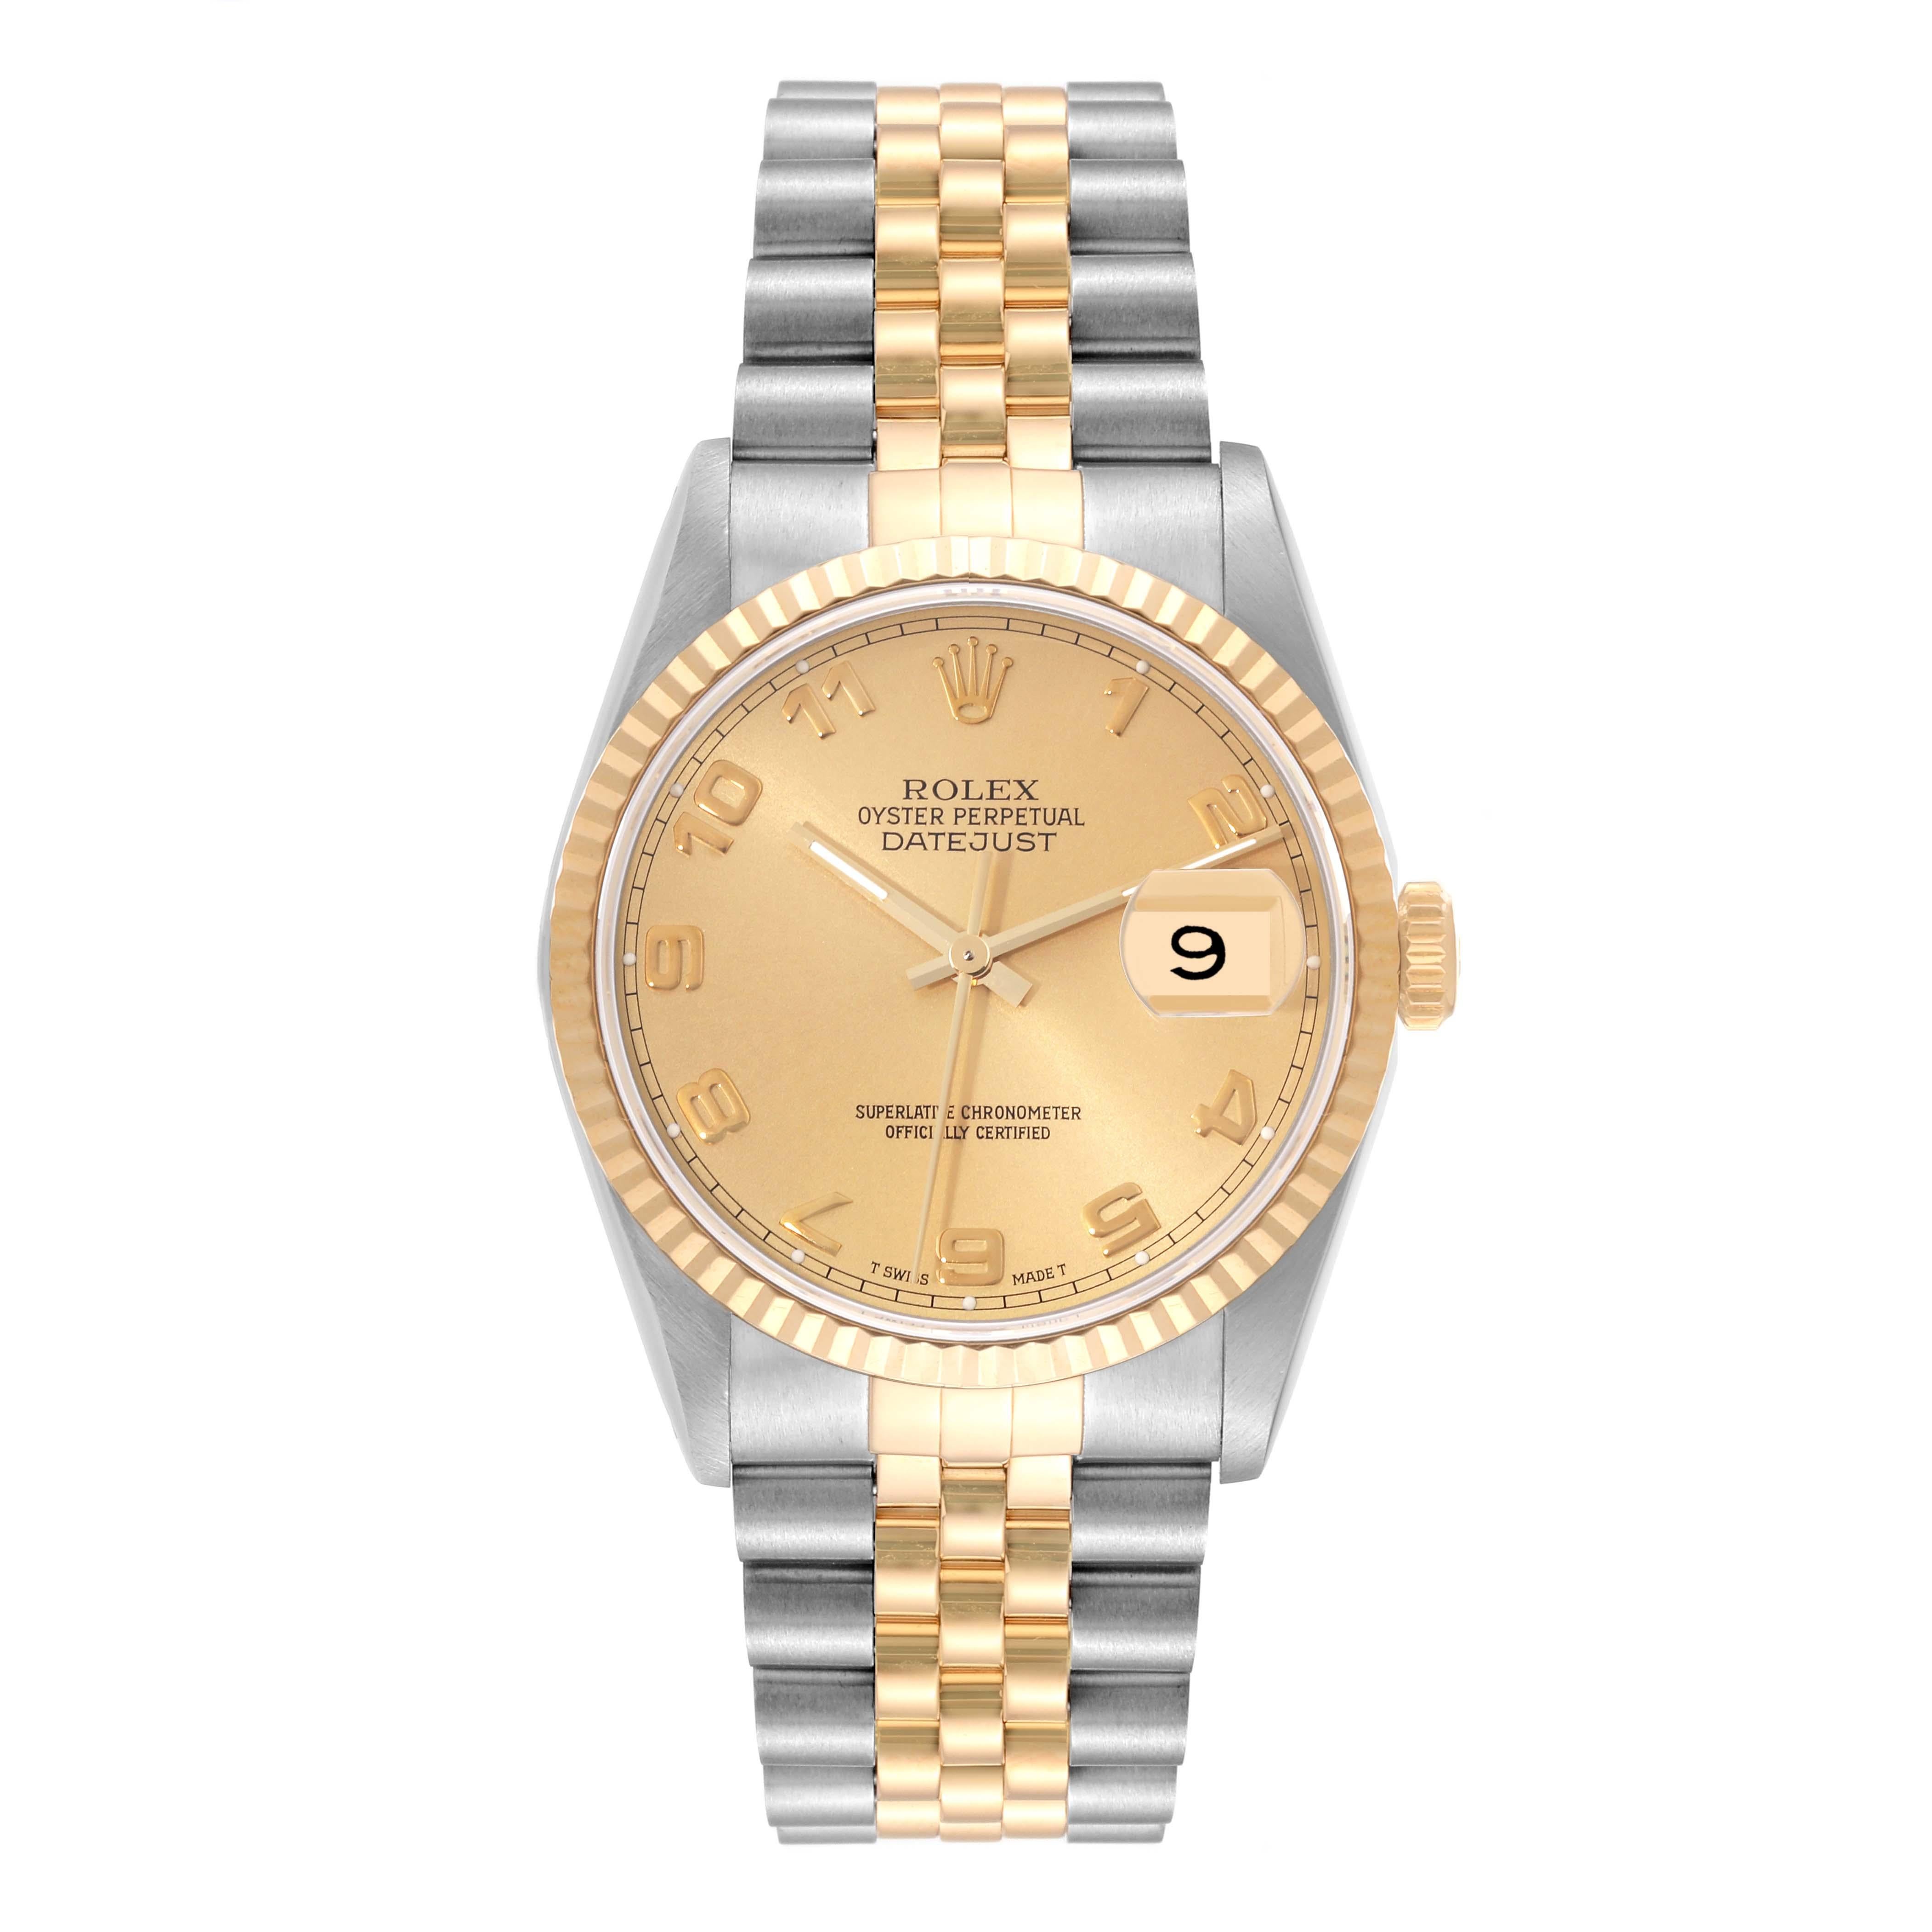 Rolex Datejust Steel Yellow Gold Champagne Arabic Dial Watch 16233 Box Papers. Mouvement automatique à remontage automatique, officiellement certifié chronomètre. Boîtier en acier inoxydable de 36.0 mm de diamètre. Logo Rolex sur une couronne.